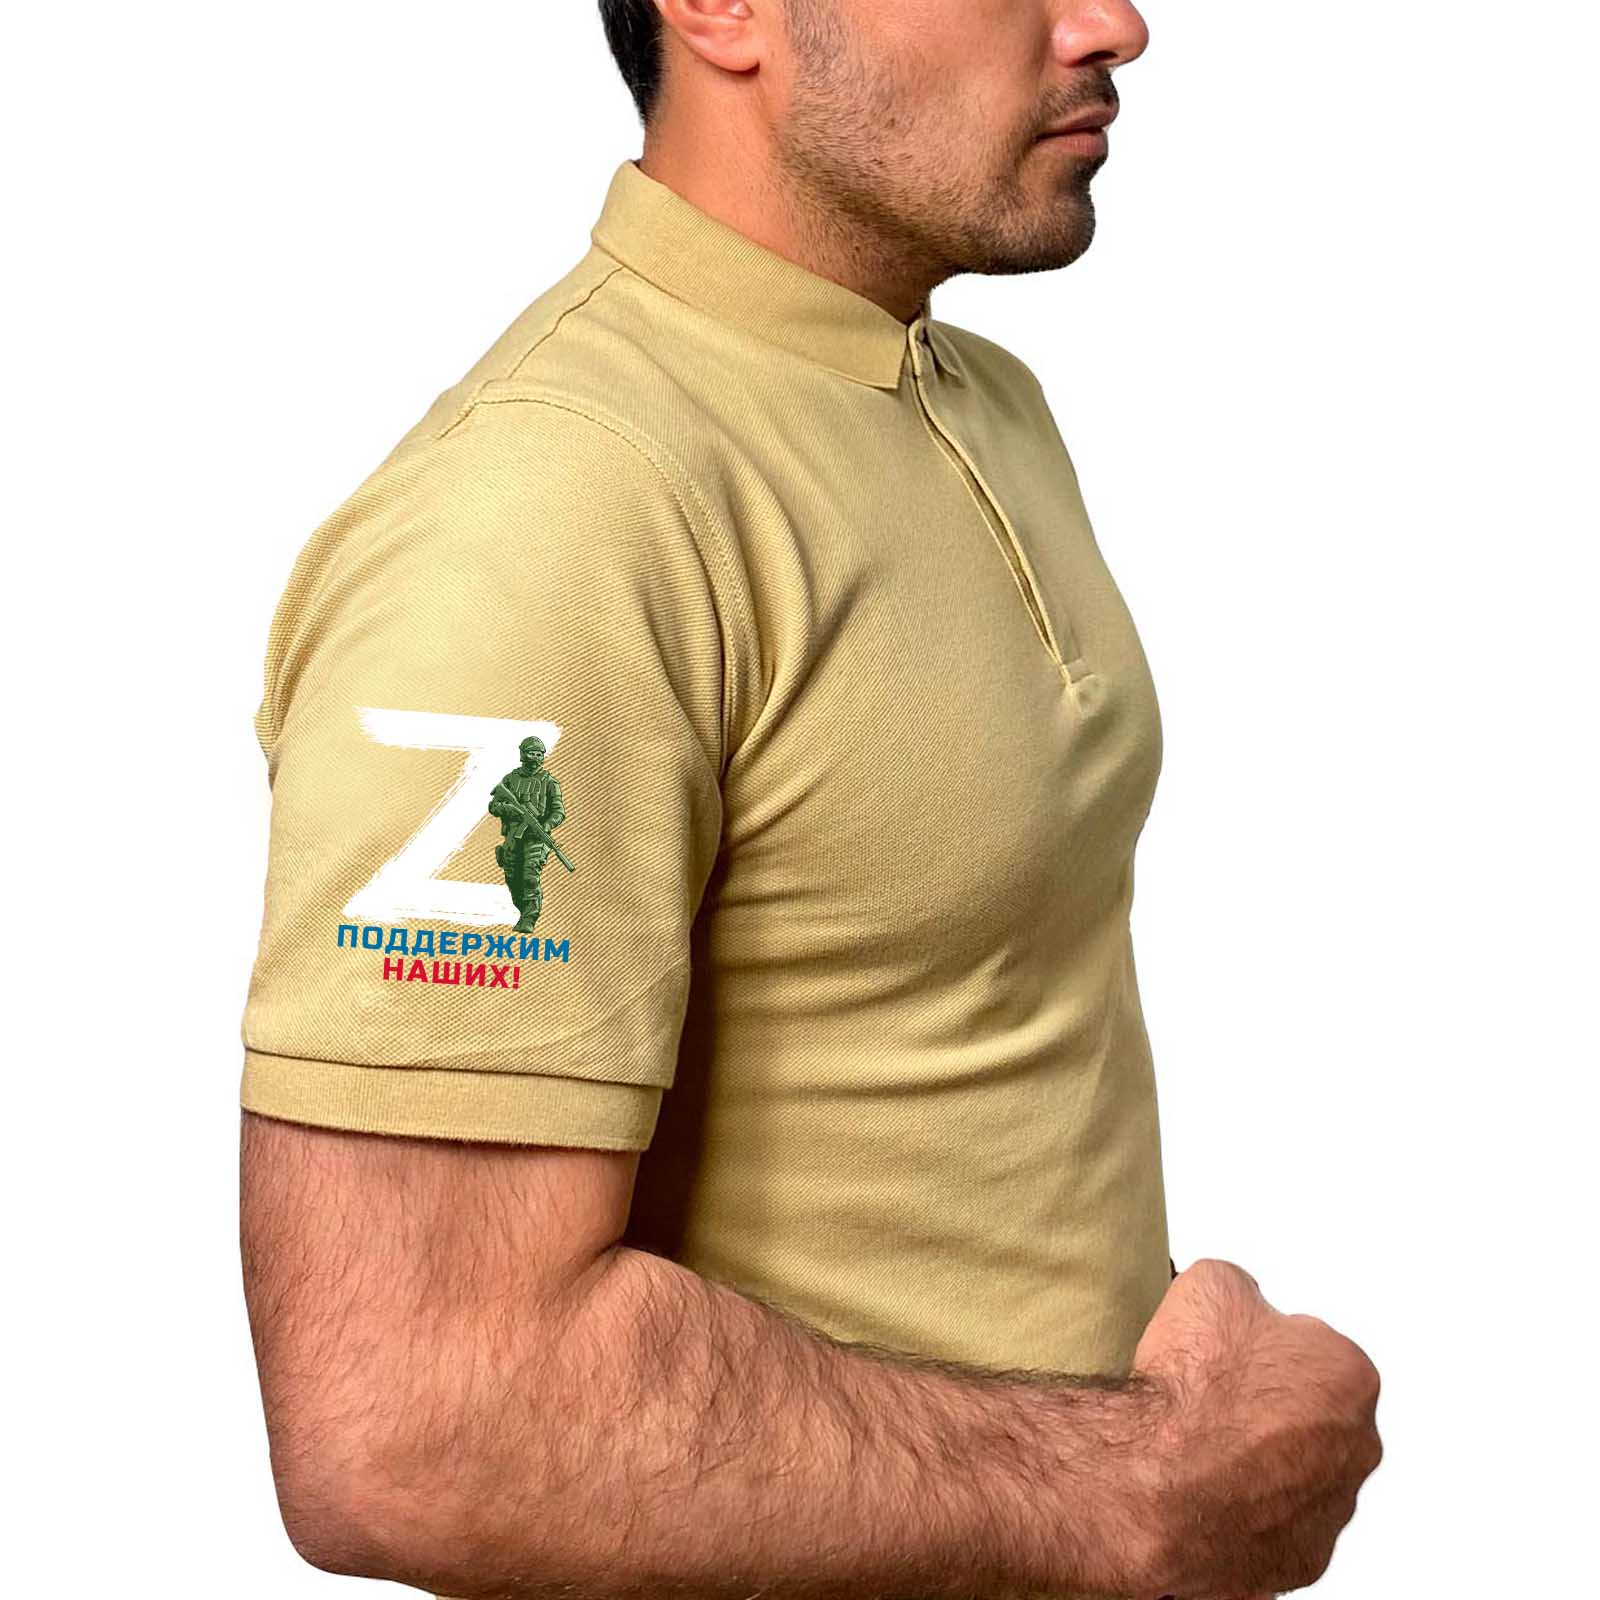 Мужская футболка с принтом буква Z